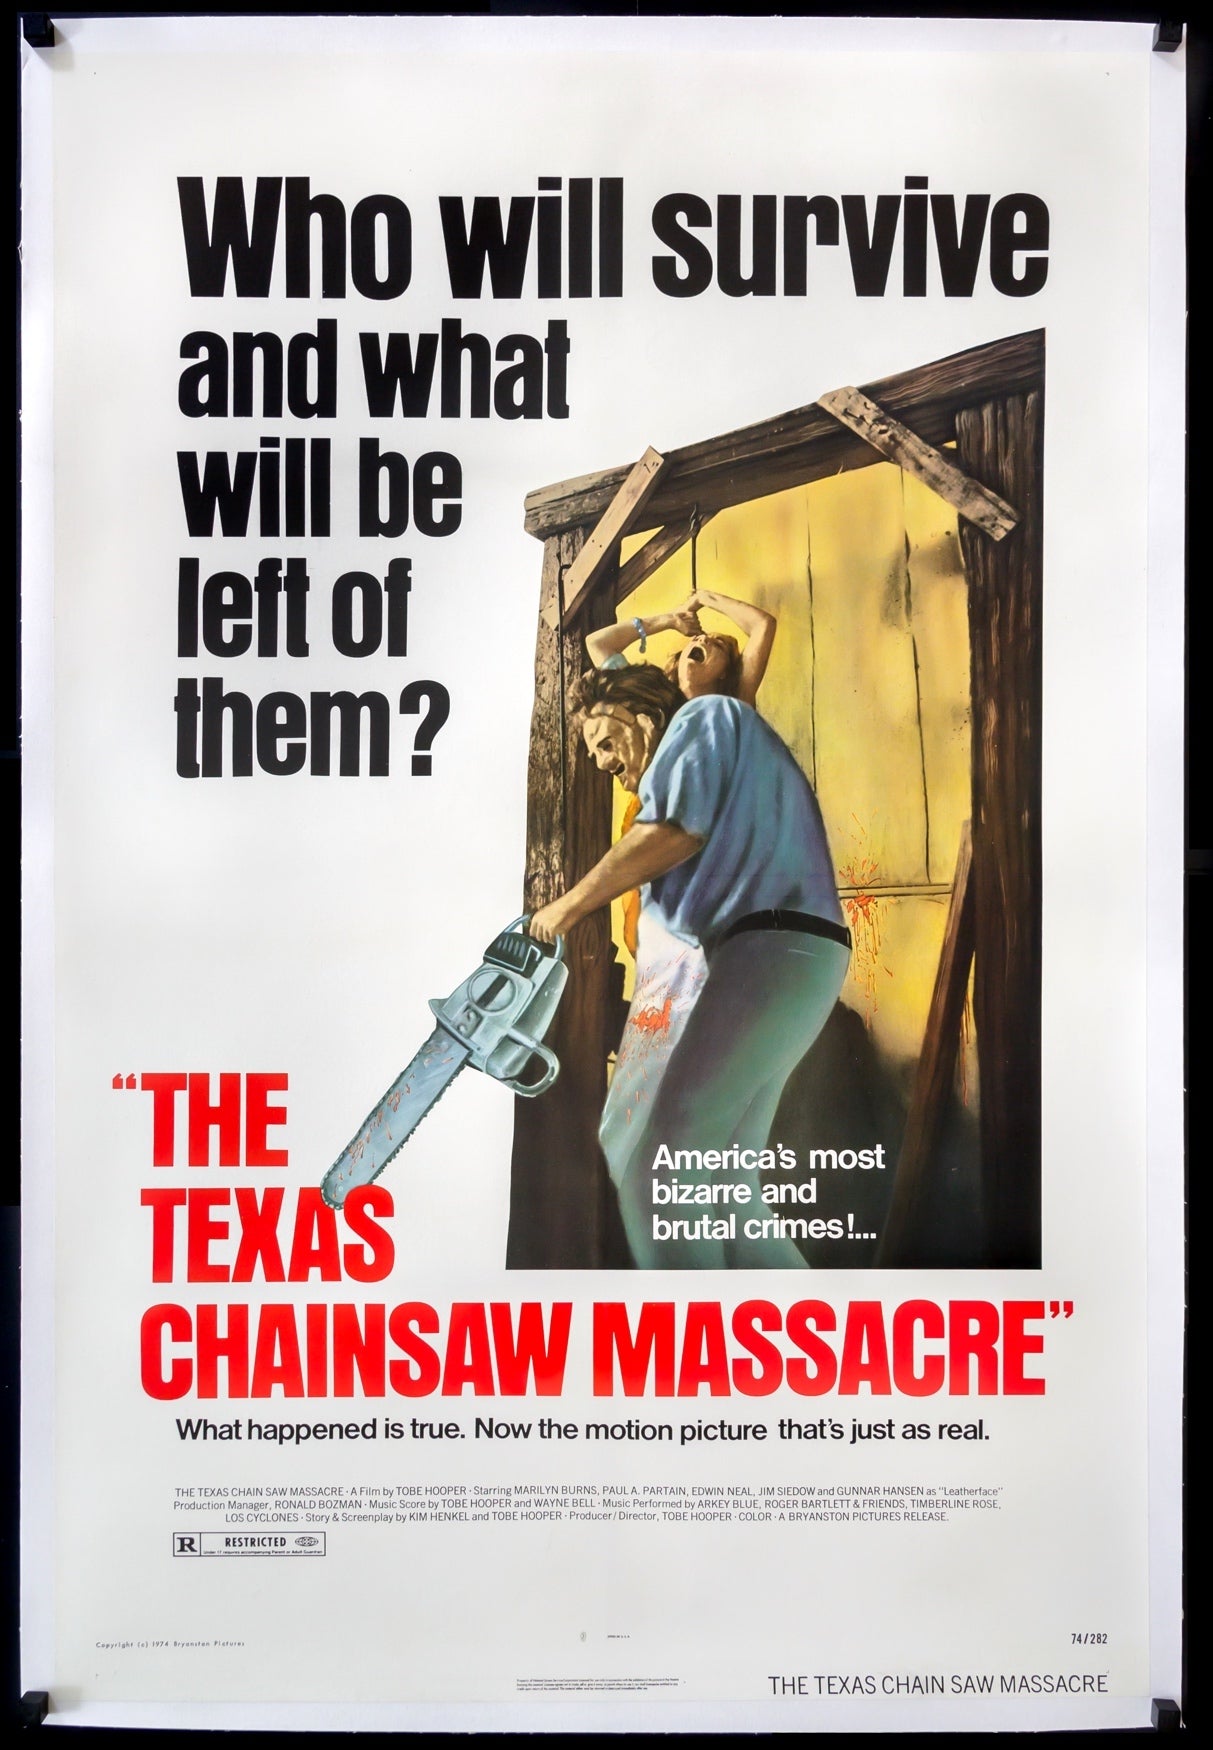 Texas Chainsaw Massacre (1974) original movie poster for sale at Original Film Art